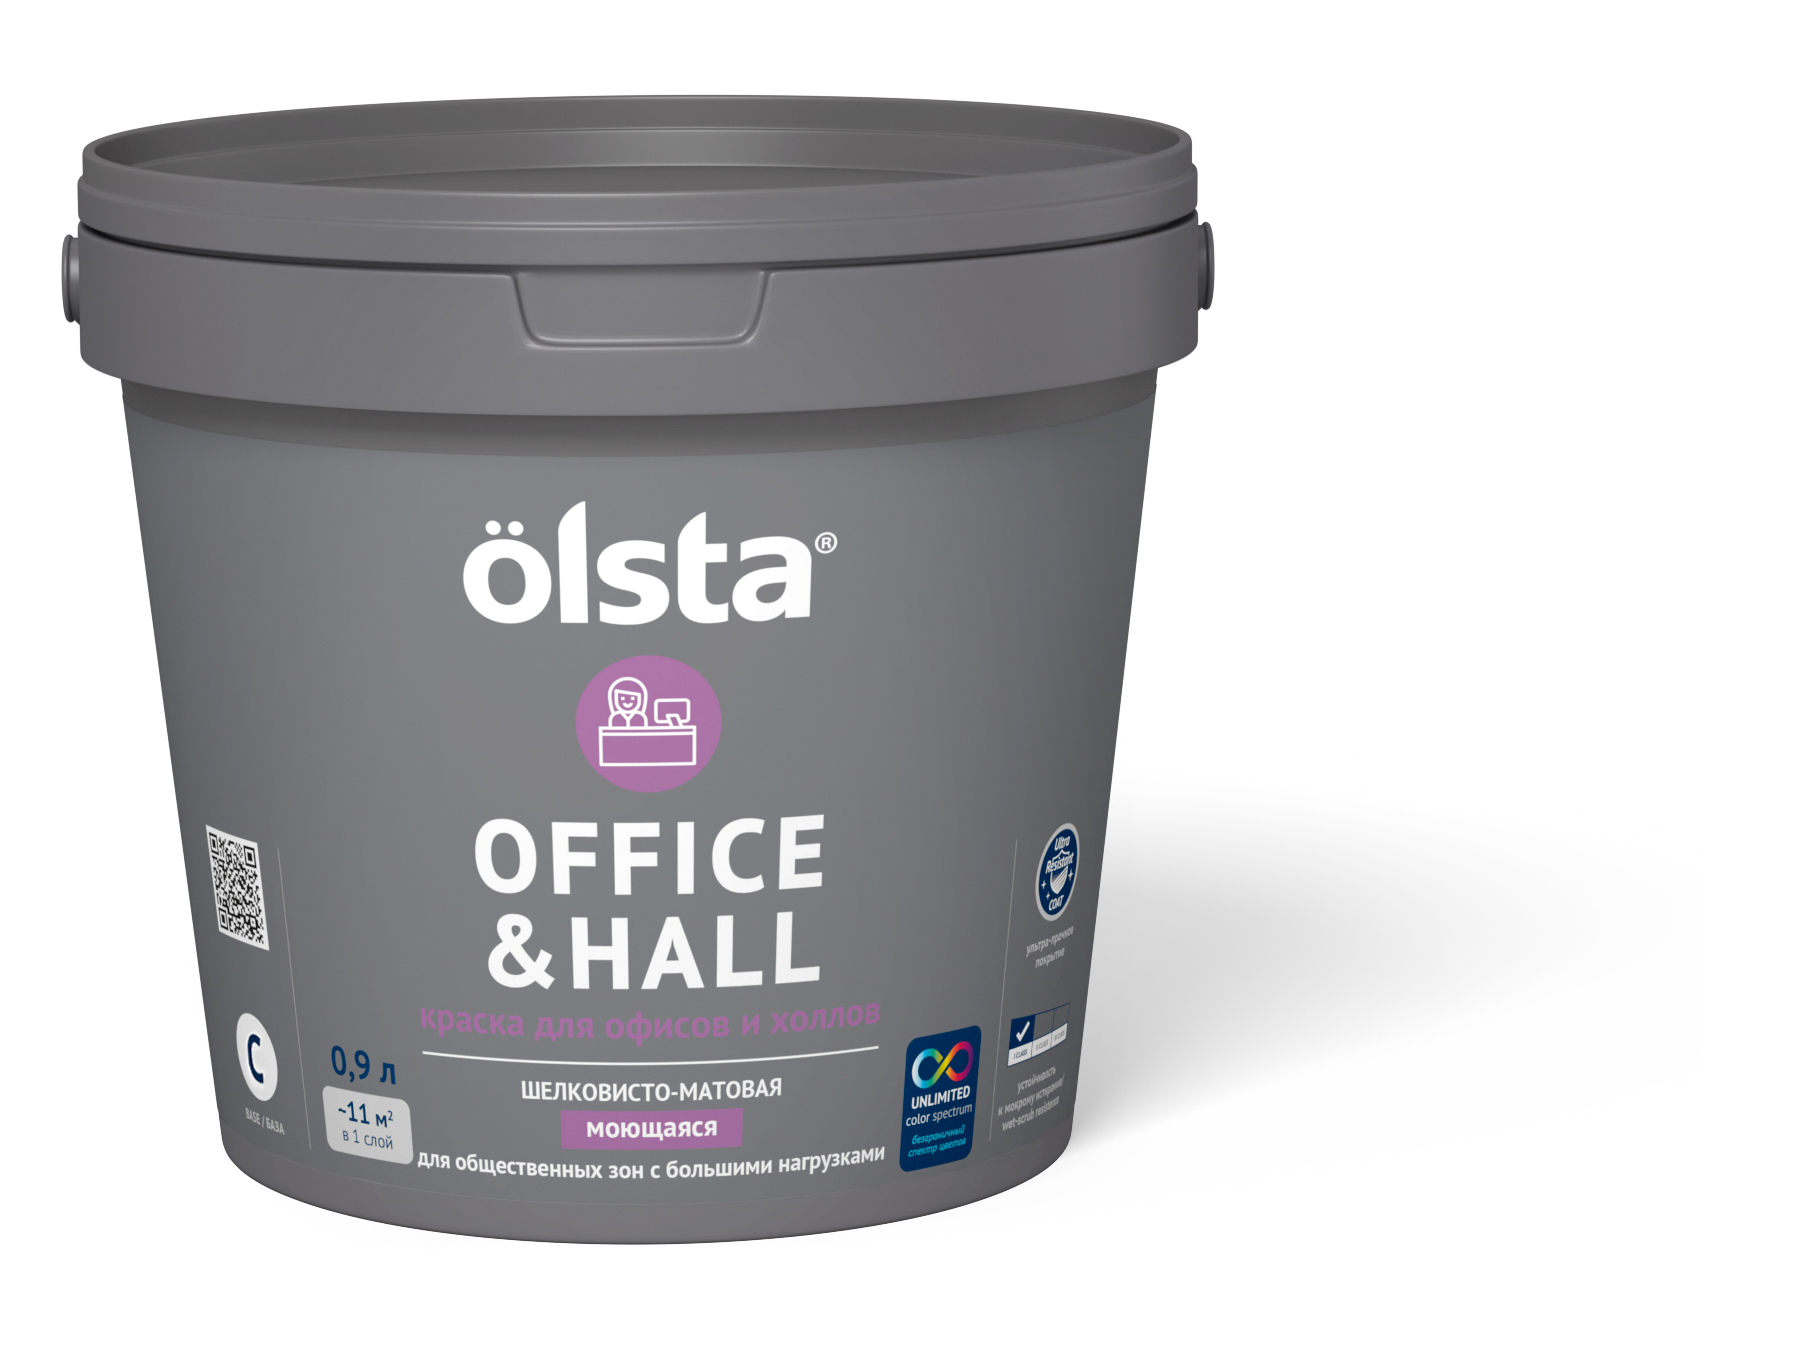 Краска для офисов и холлов Olsta Office&hall База C 0,9 л (только под колеровку)